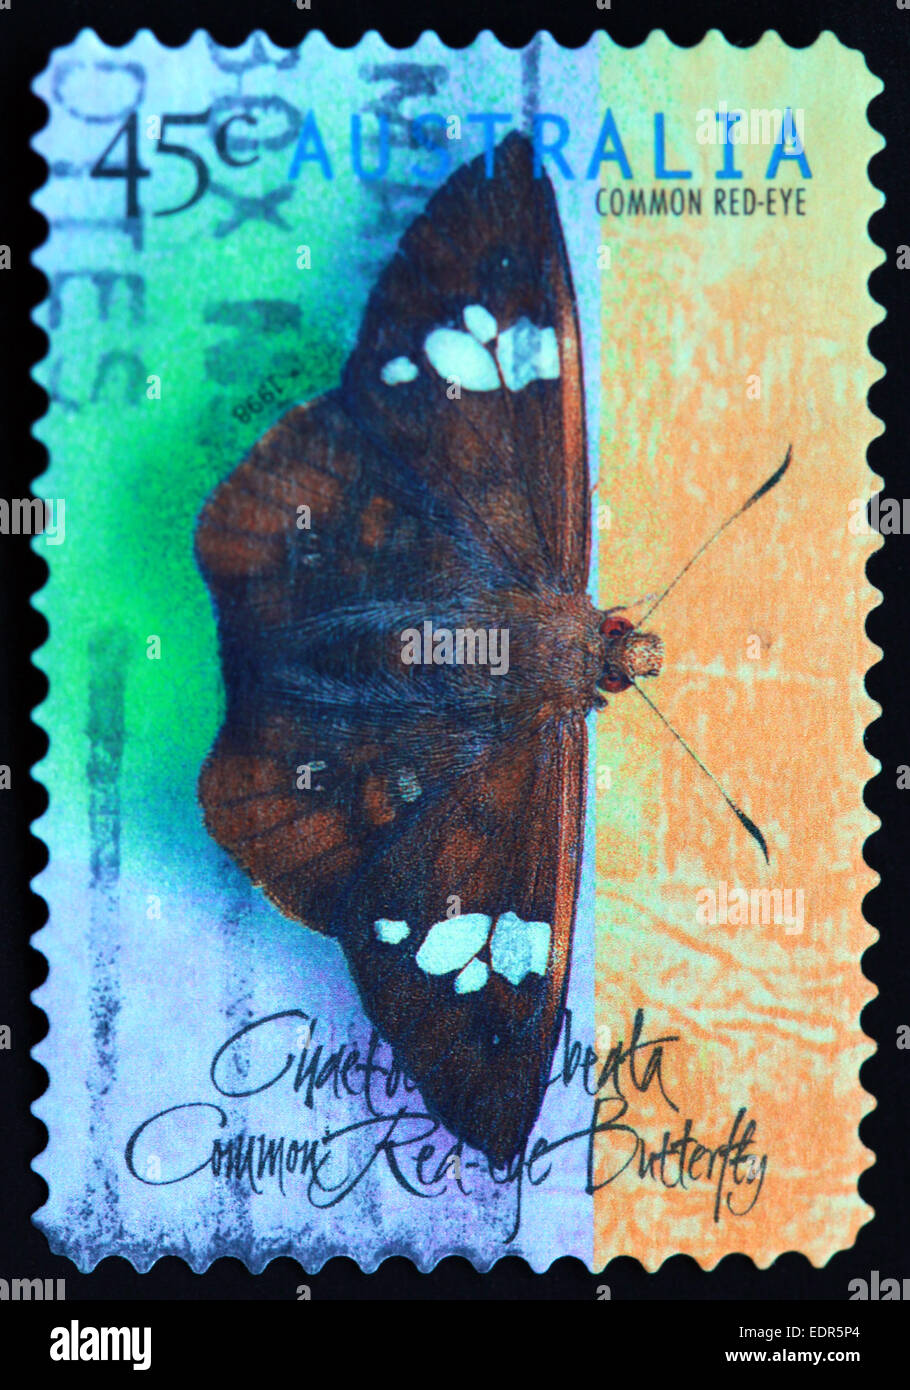 Utilisé et oblitérée Australie / Austrailian commune de timbres les yeux rouges 45 c 1998 Banque D'Images